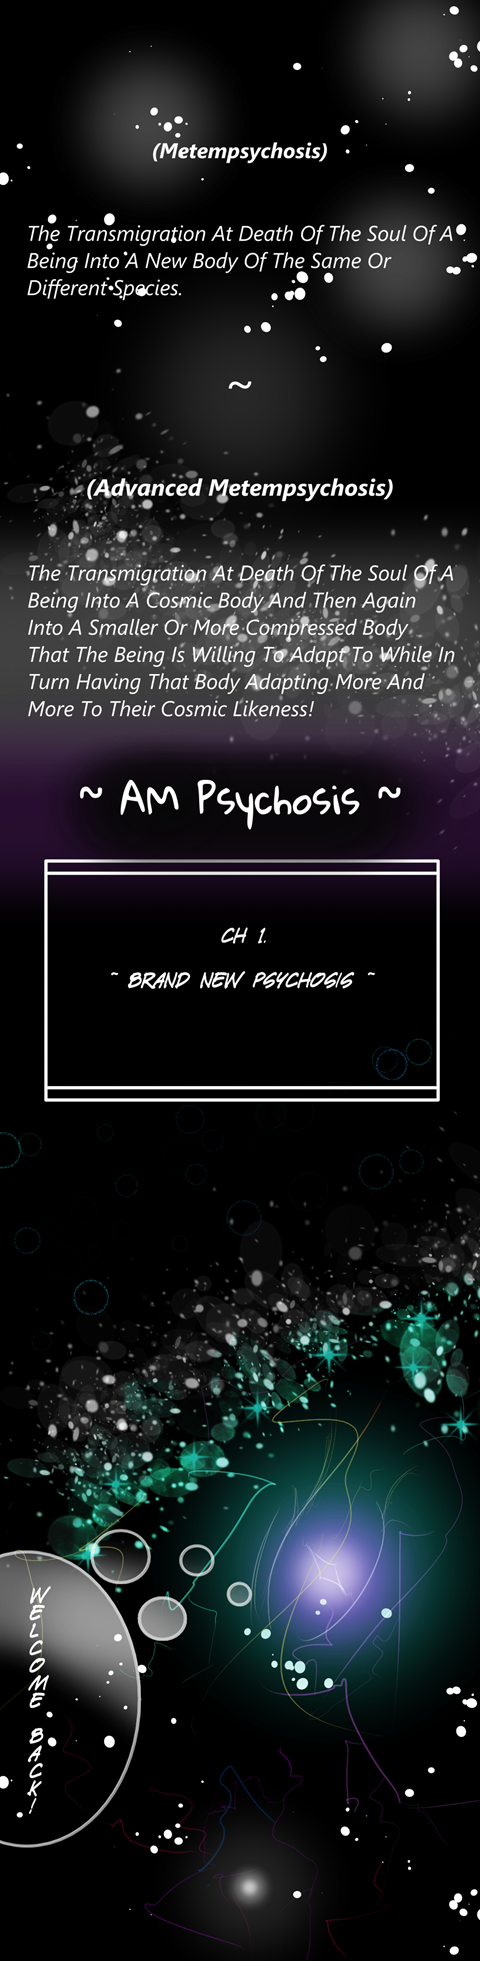 Chp1 Brand New Psychosis